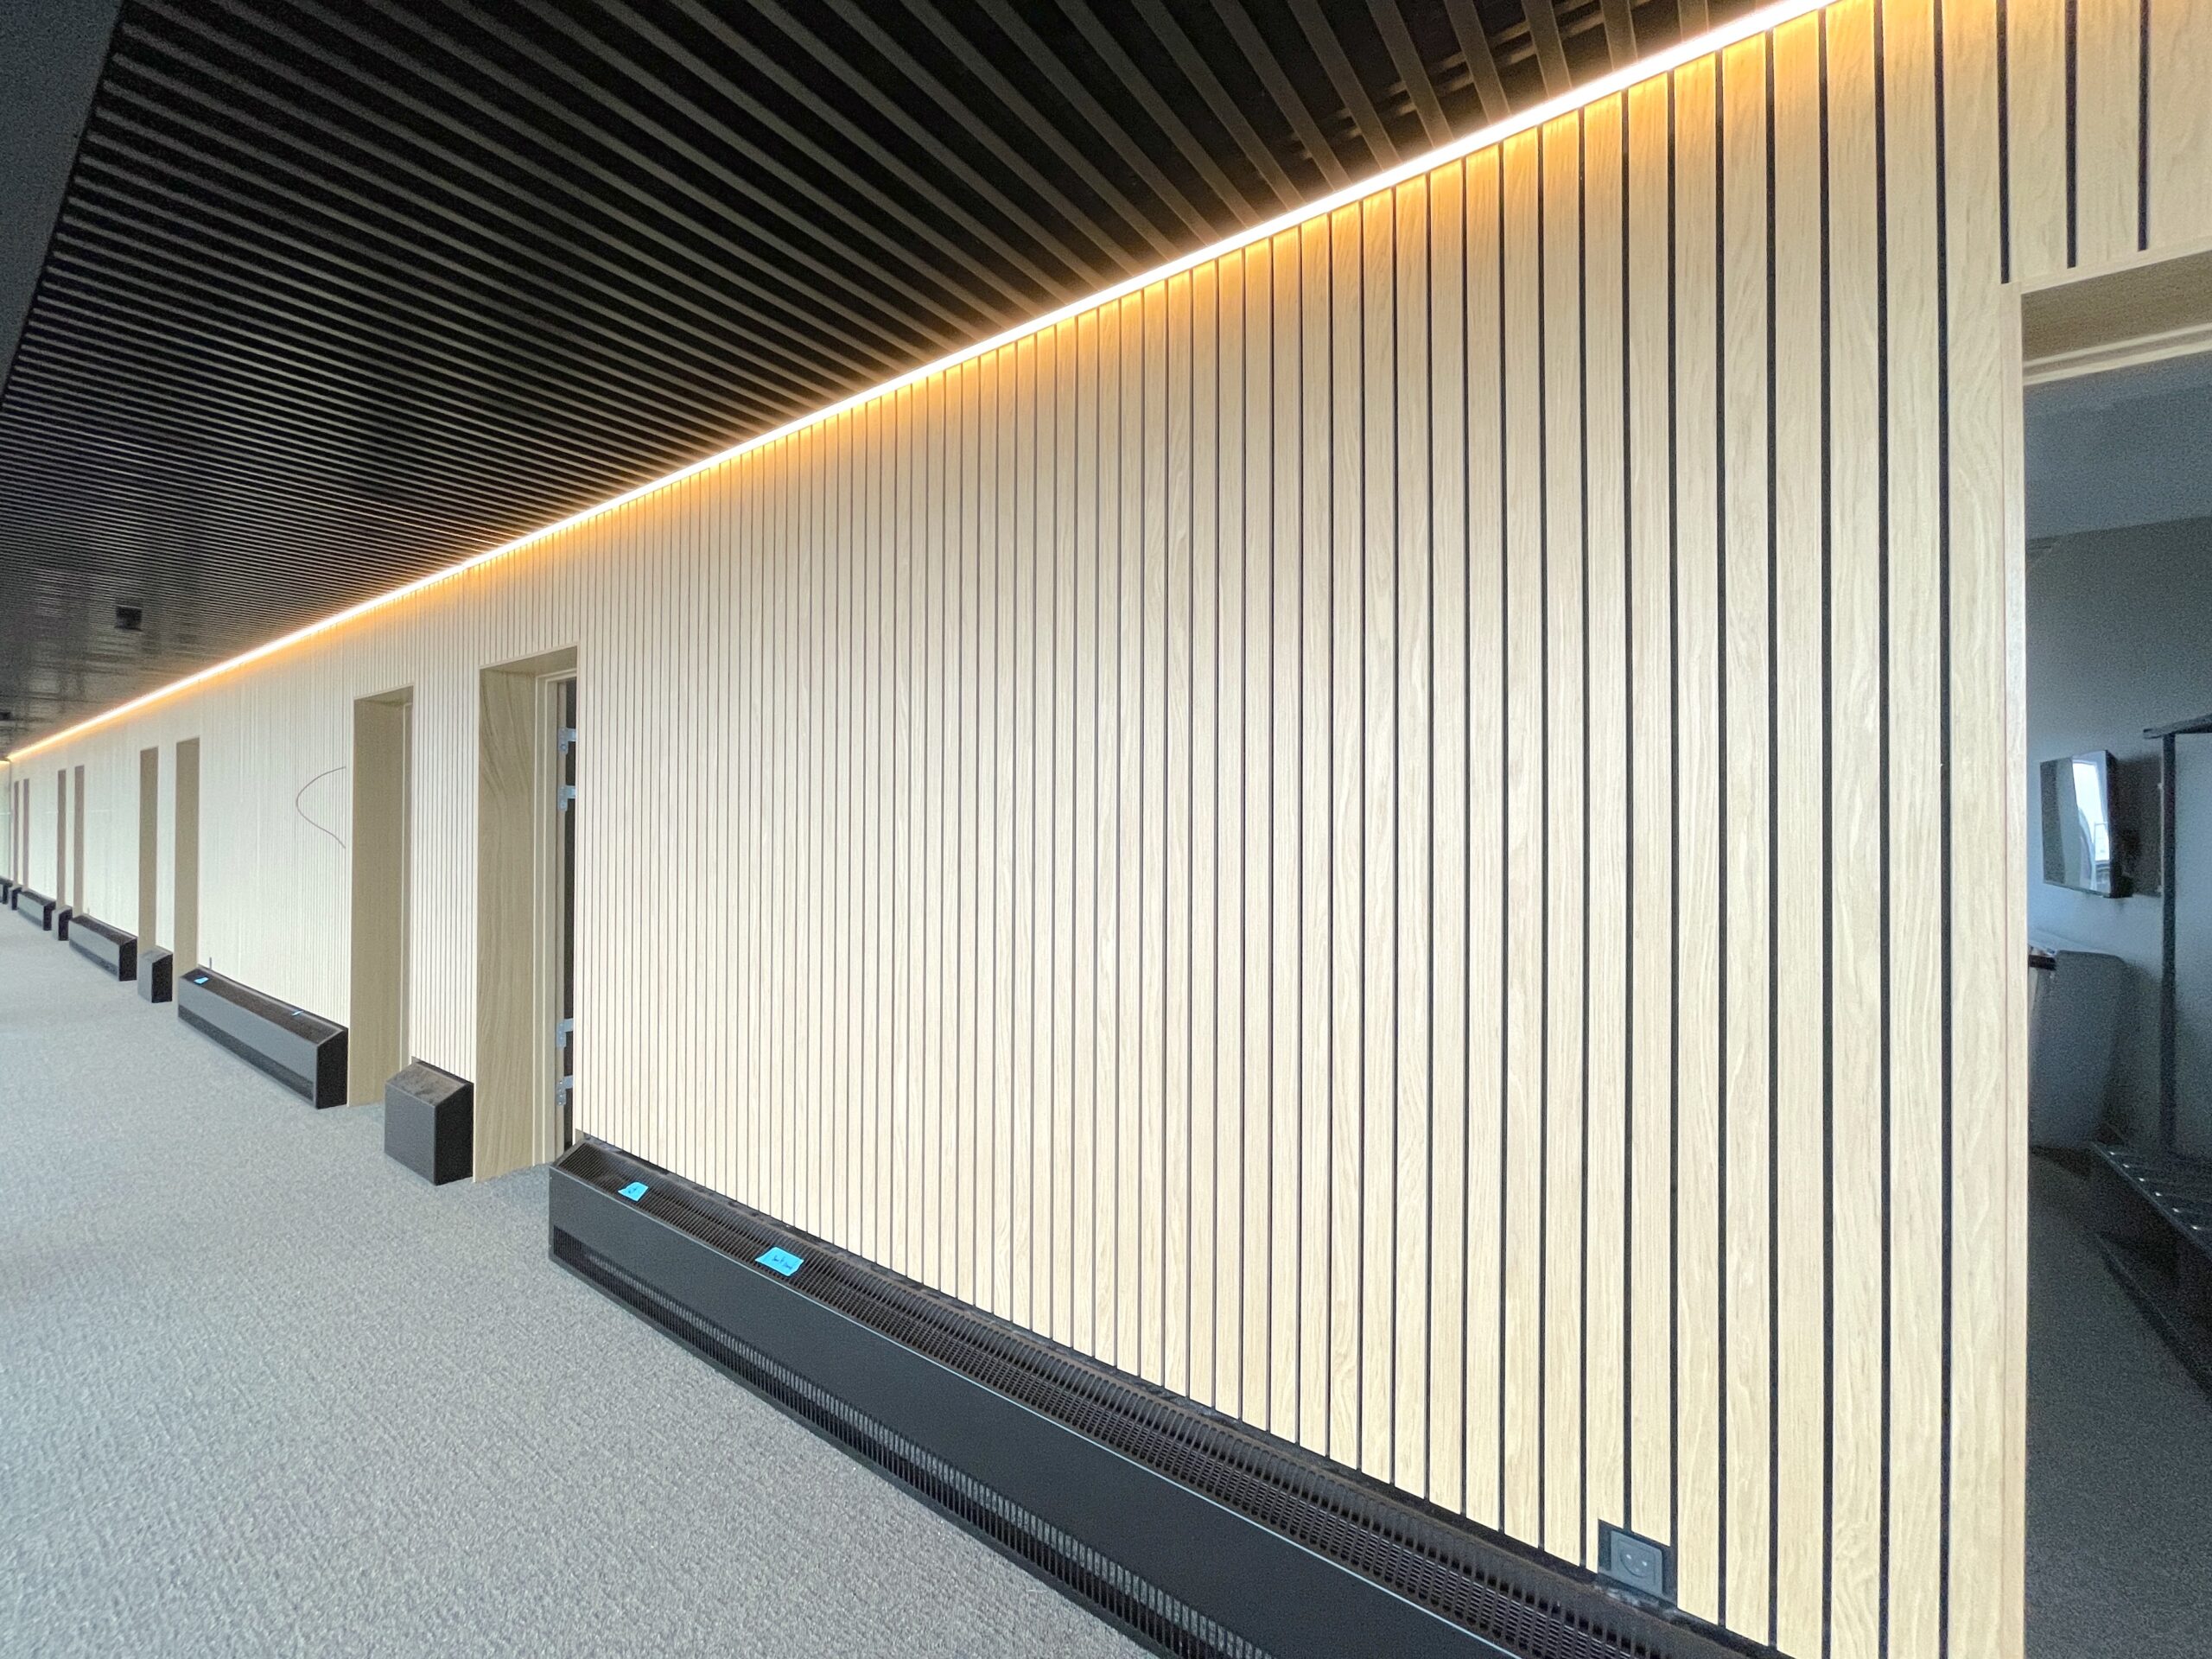 Gangen i Aarhus Lufthavns hotel er blevet beklædt med trælameller